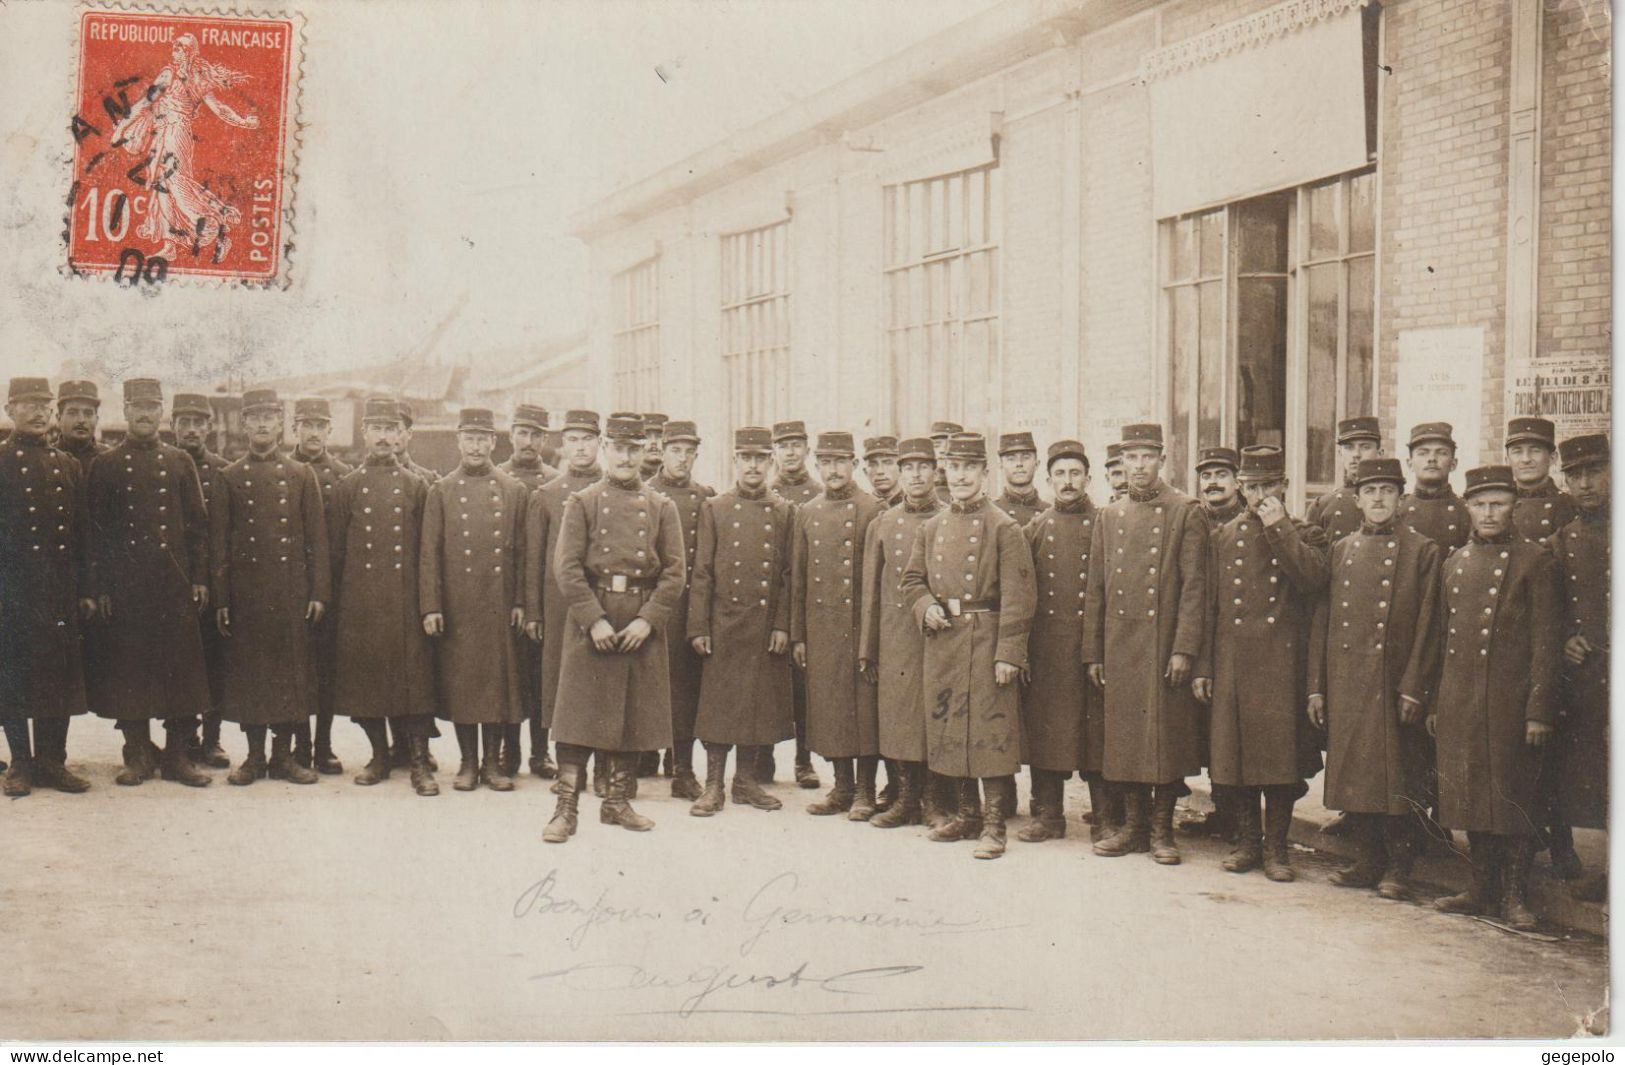 NANCY - Les Militaires Du 37ème Régiment D'Infanterie Posant En 1909 ( Carte Photo ) - Nancy